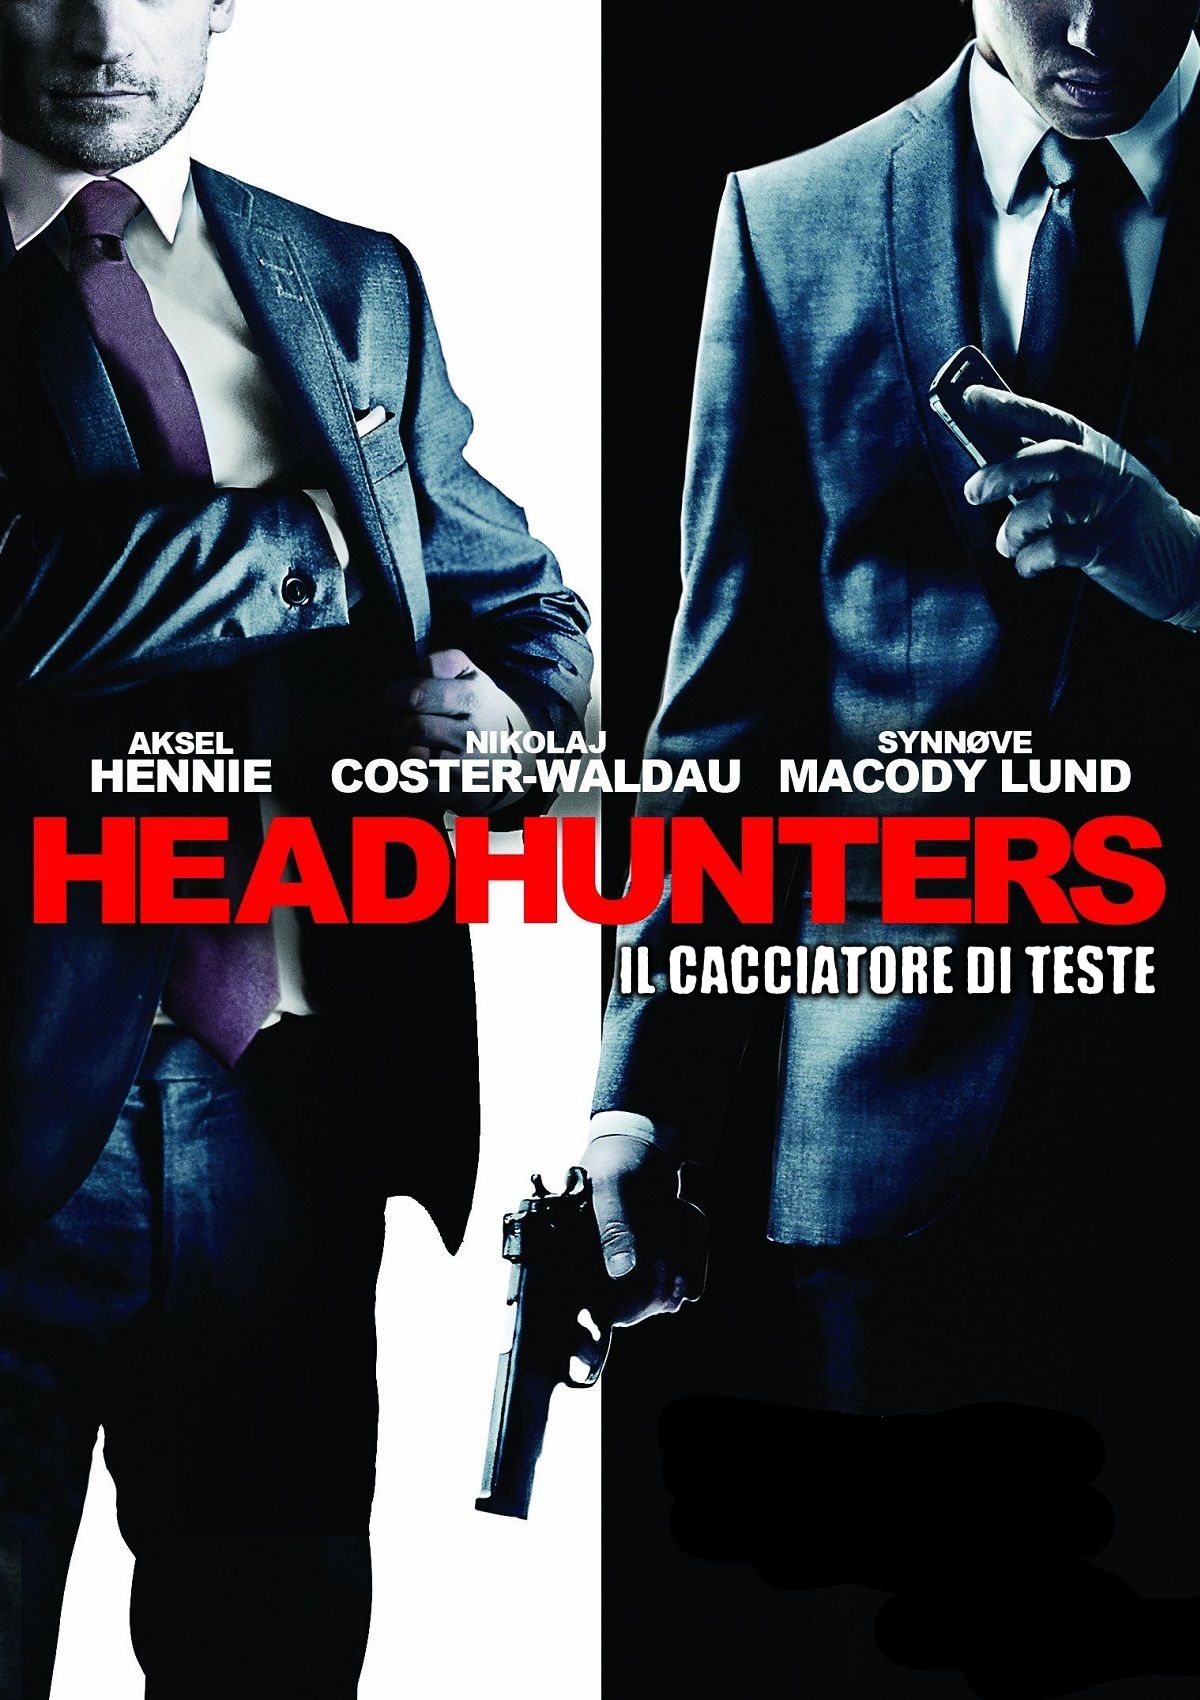 Headhunters  – Il cacciatore di teste [HD] (2011)